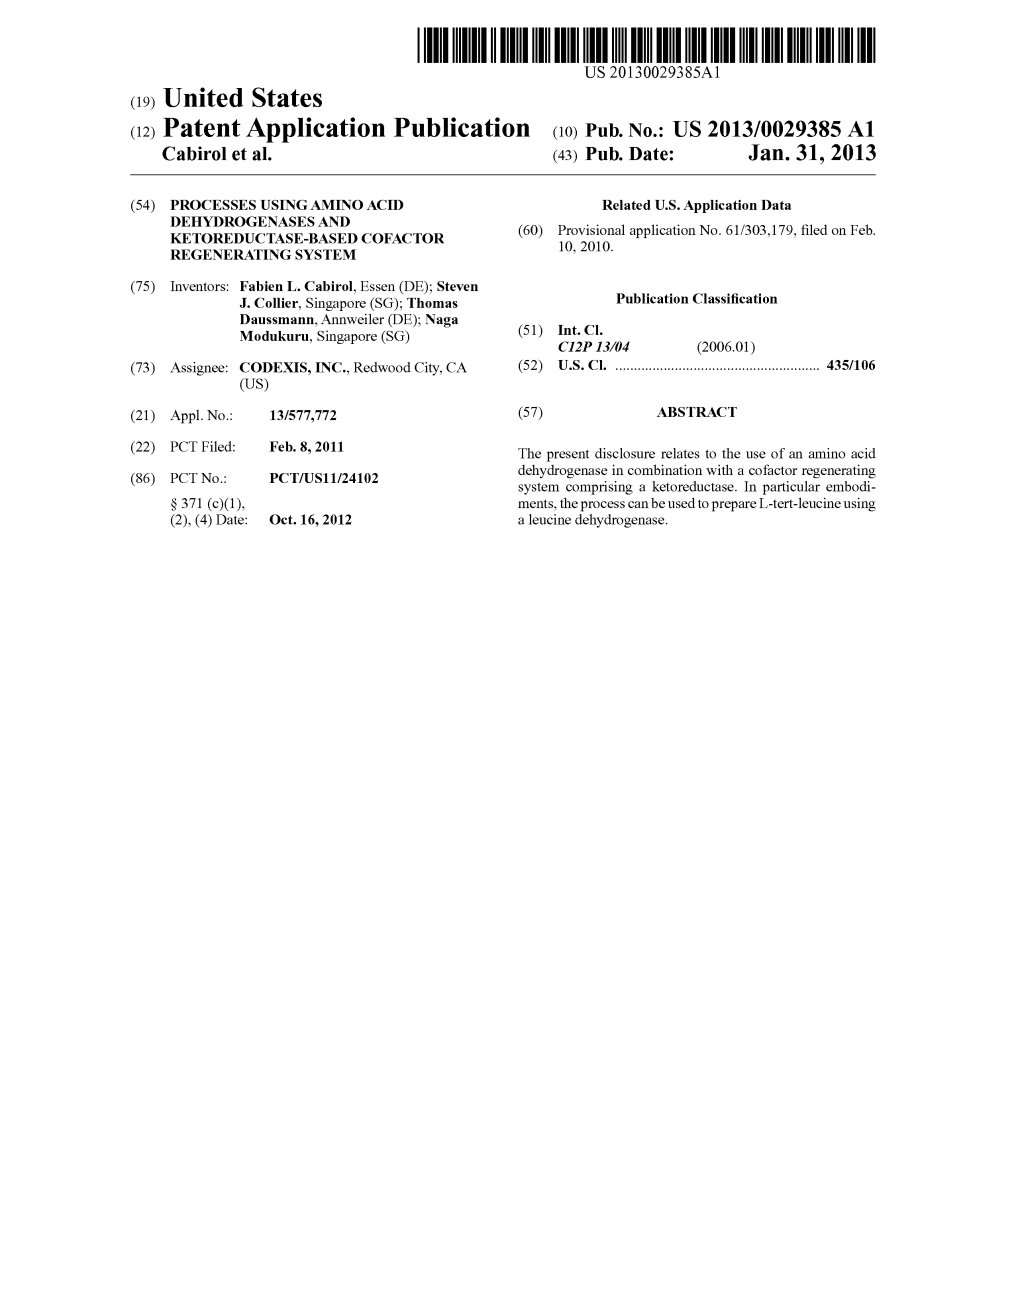 (12) Patent Application Publication (10) Pub. No.: US 2013/0029385 A1 Cabirol Et Al